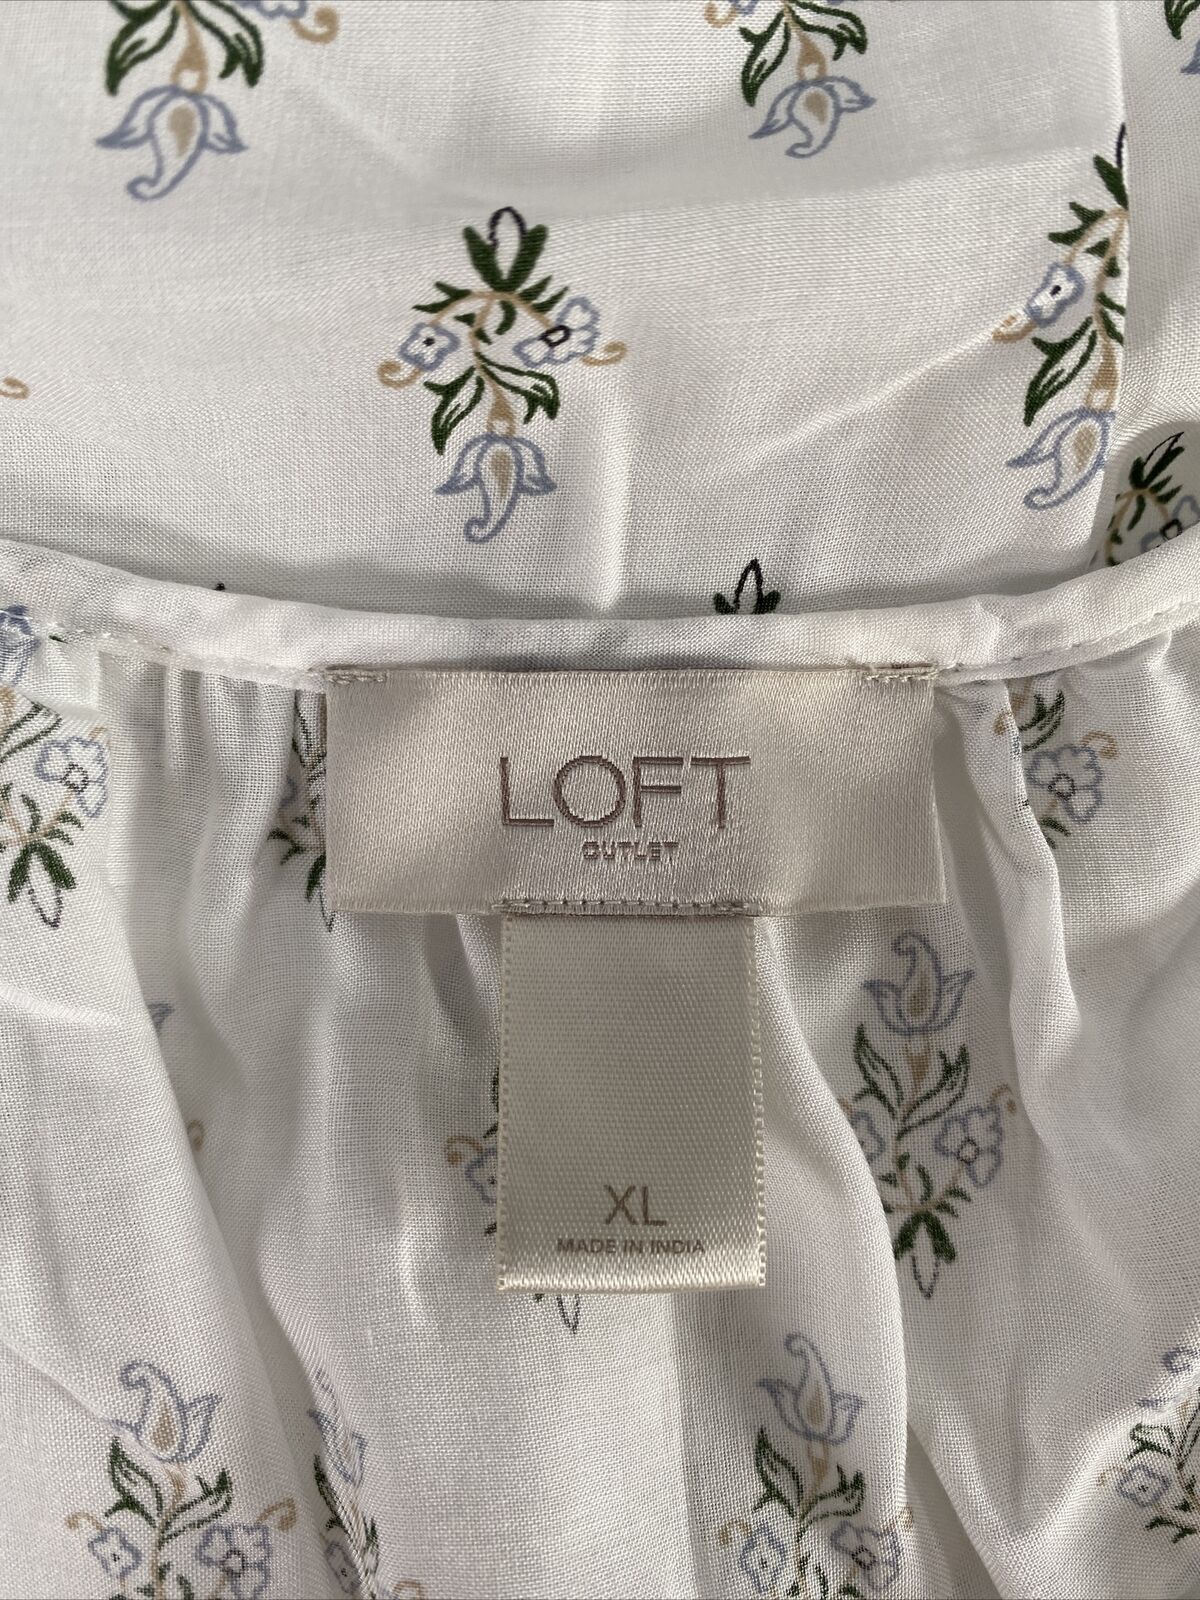 LOFT Women's White/Green Tassel Front Sleeveless V-Neck Tank Top - XL